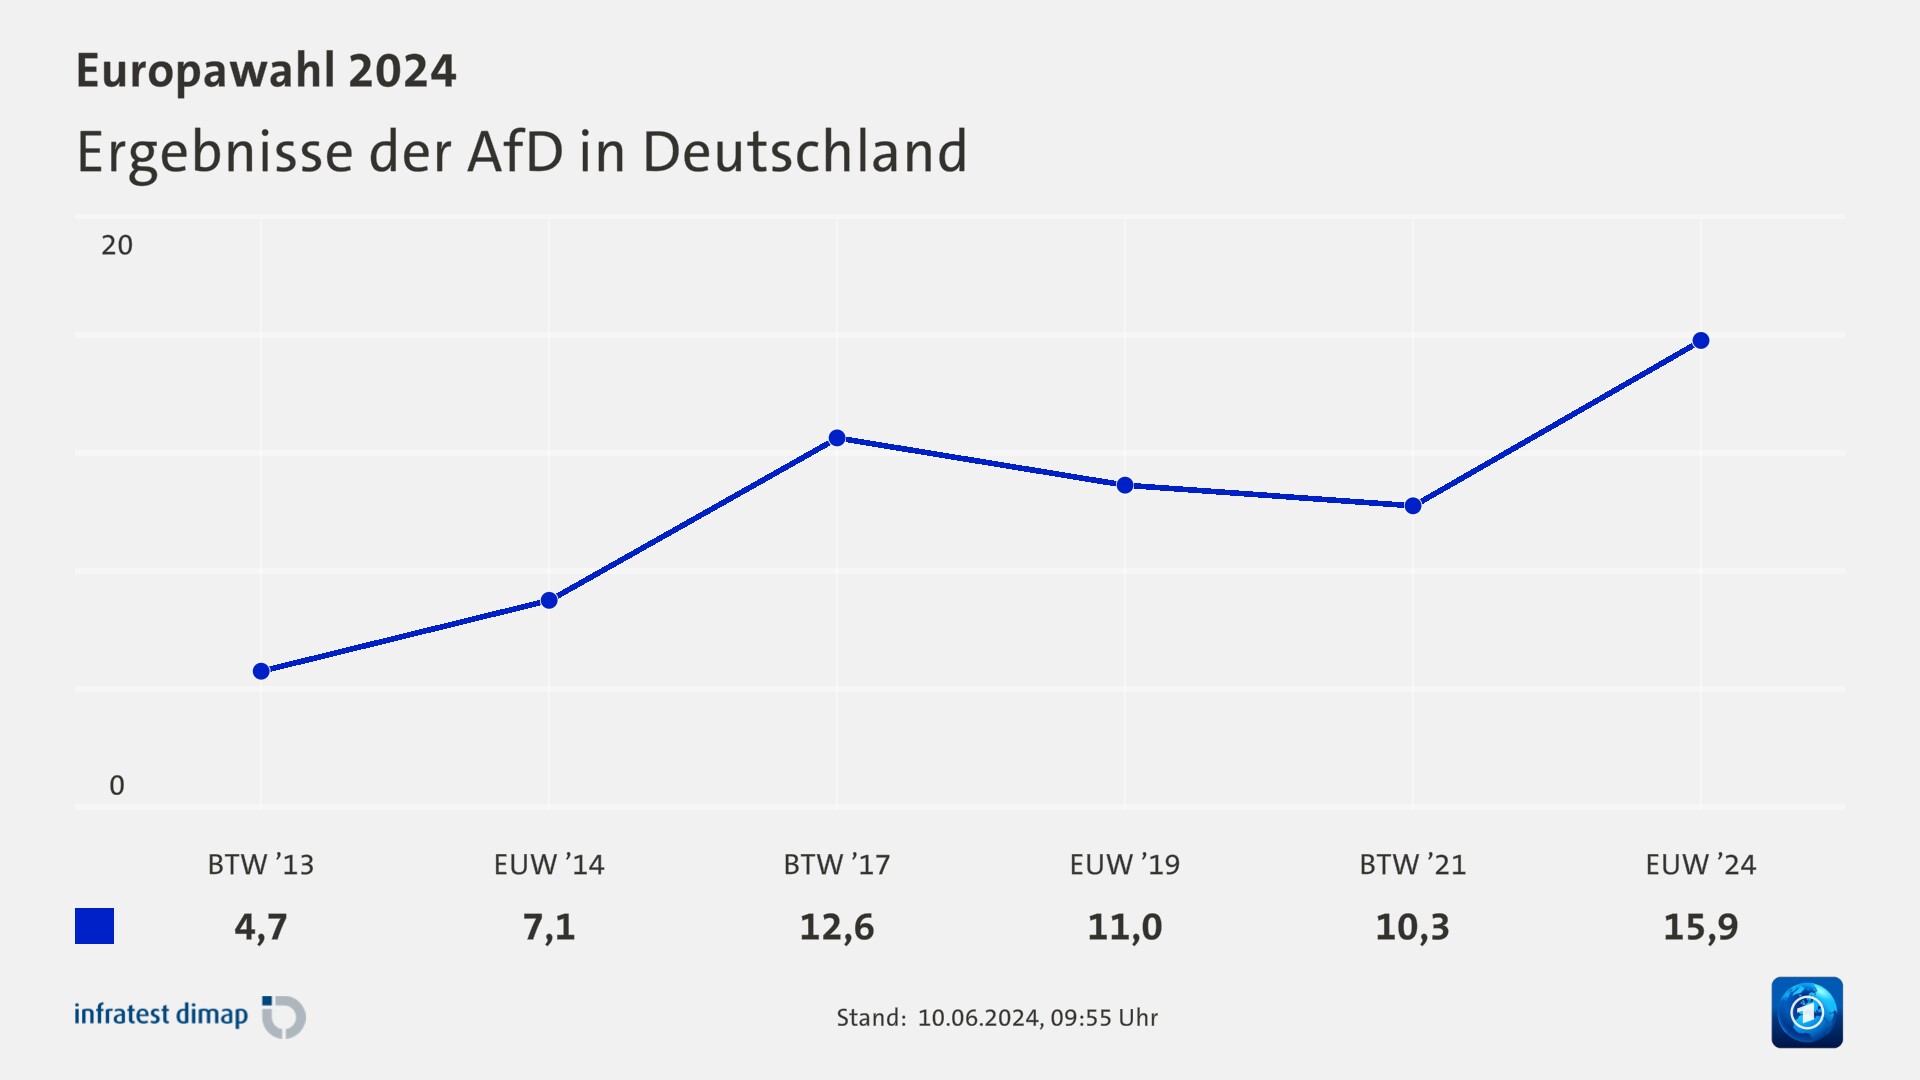 Ergebnisse der AfD in Deutschland